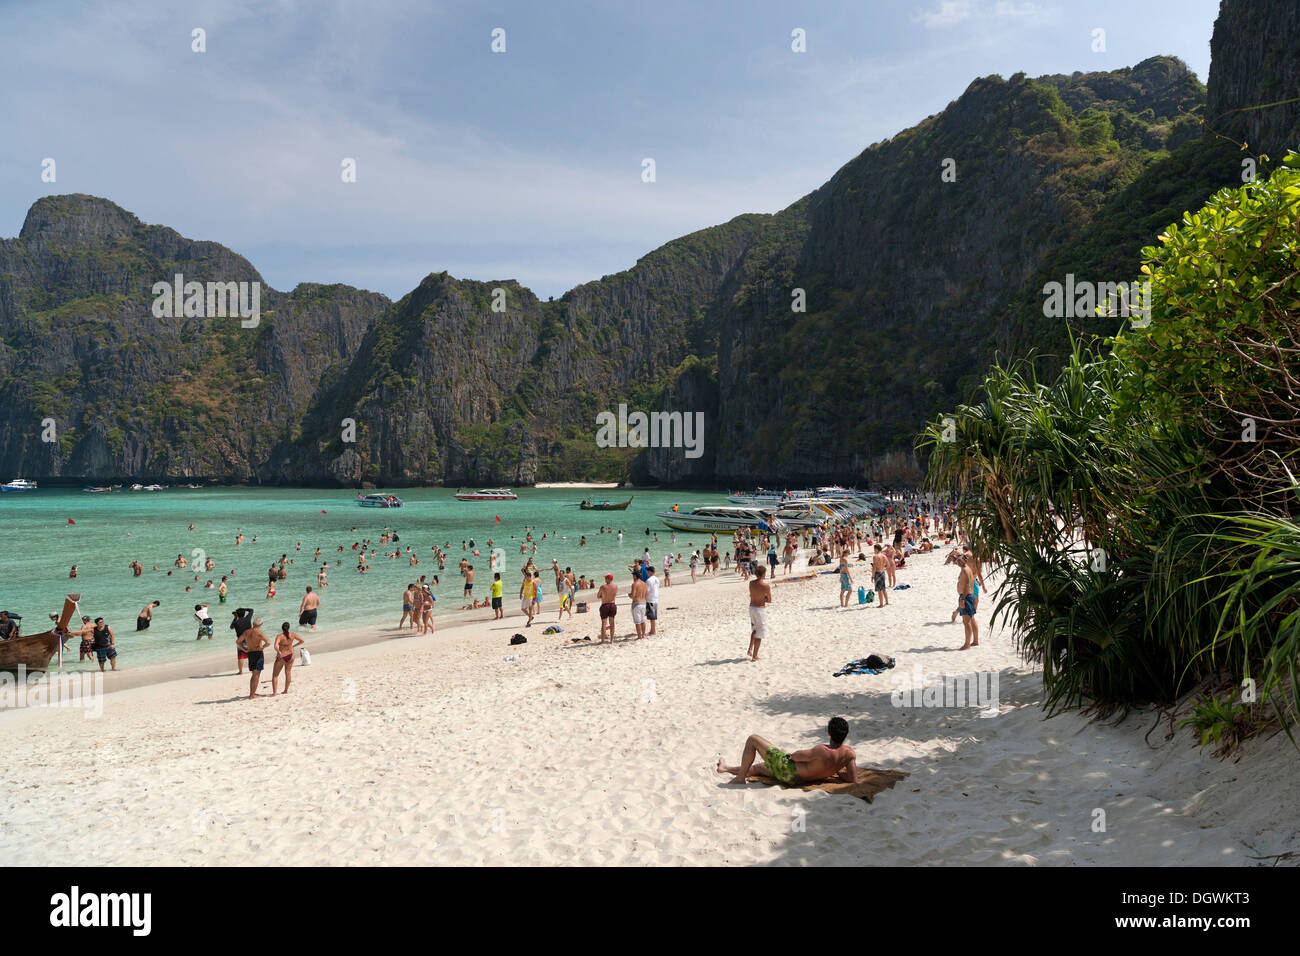 Le tourisme de masse sur la plage de sable de Maya Beach, Ko Phi Phi Island, Phuket, Thailande, Asie Banque D'Images